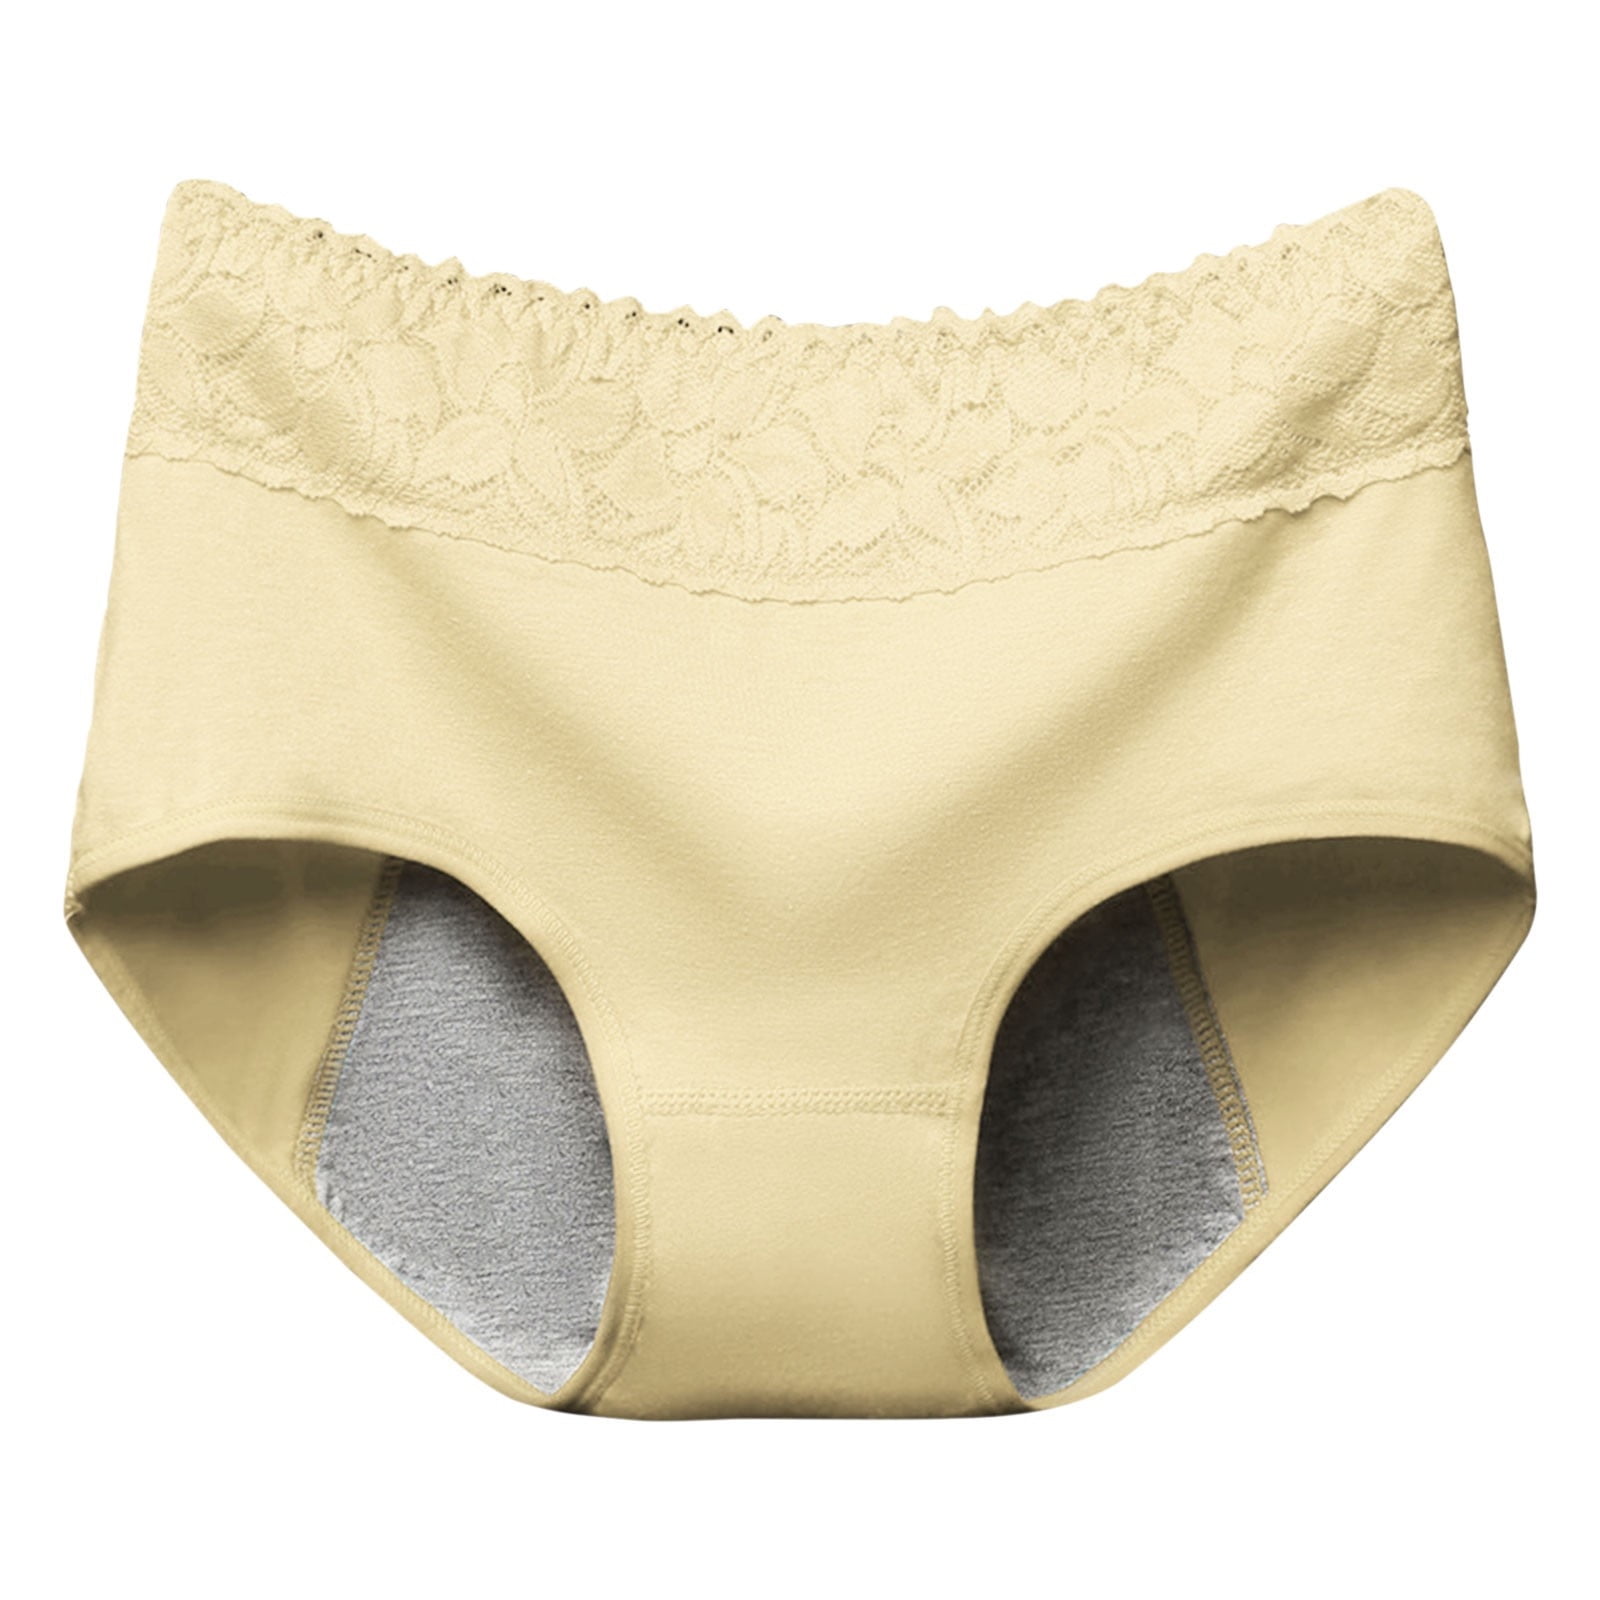 GWAABD Sweatproof Underwear Women Pants Anti Side Leakage Cotton